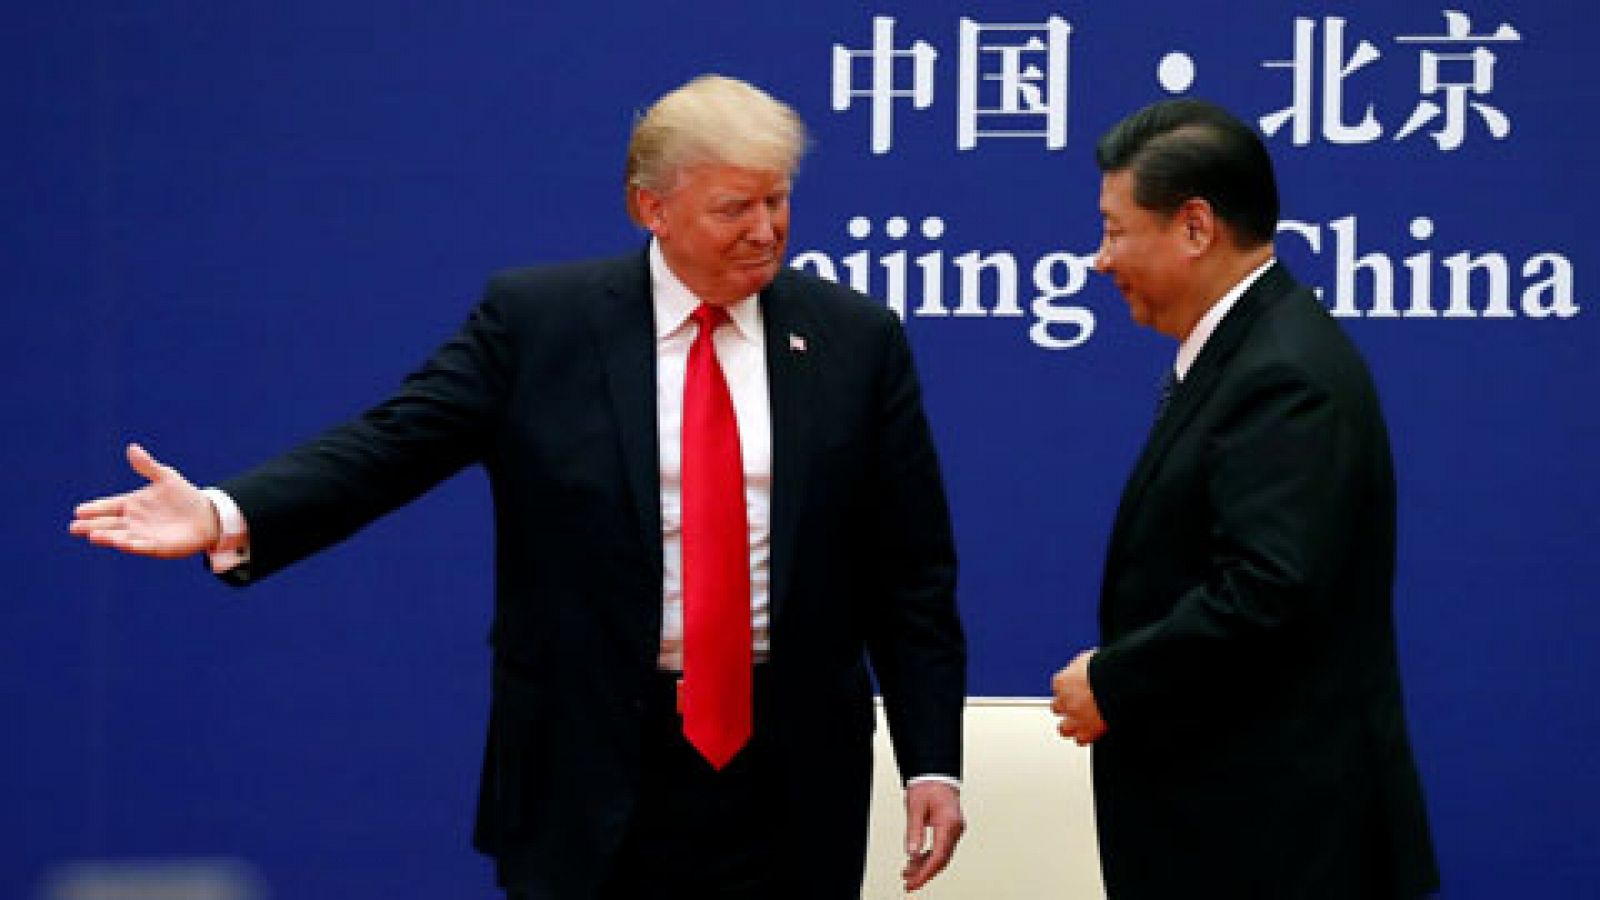 El encuentro en Pekín de Trump y Xi Jinping recompone la relación entre EE.UU. y China